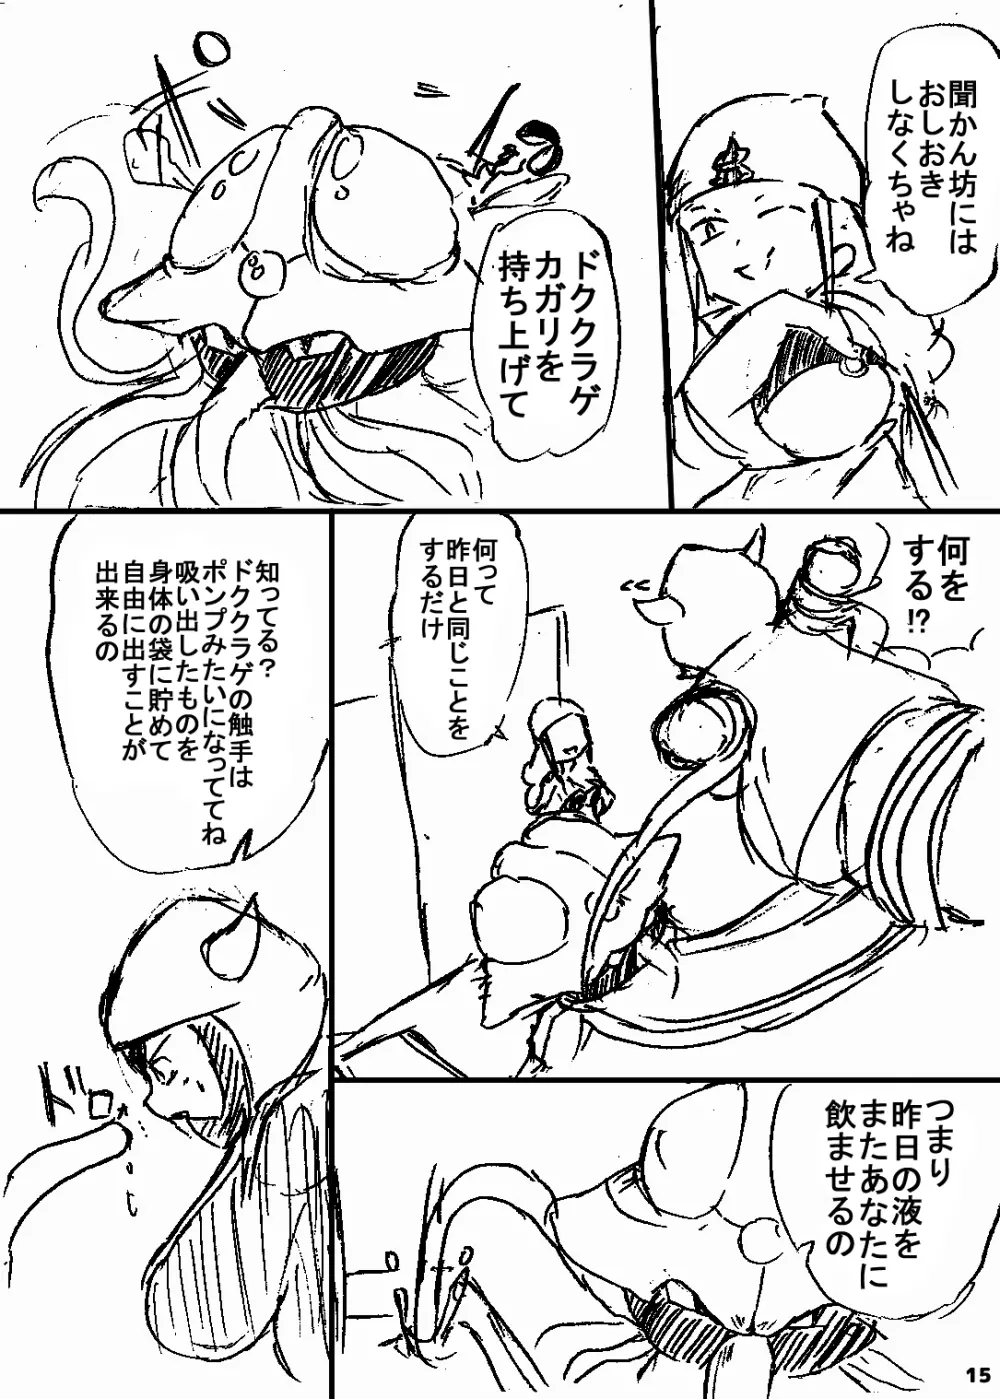 ポケスペカガリ肥満化漫画 14ページ